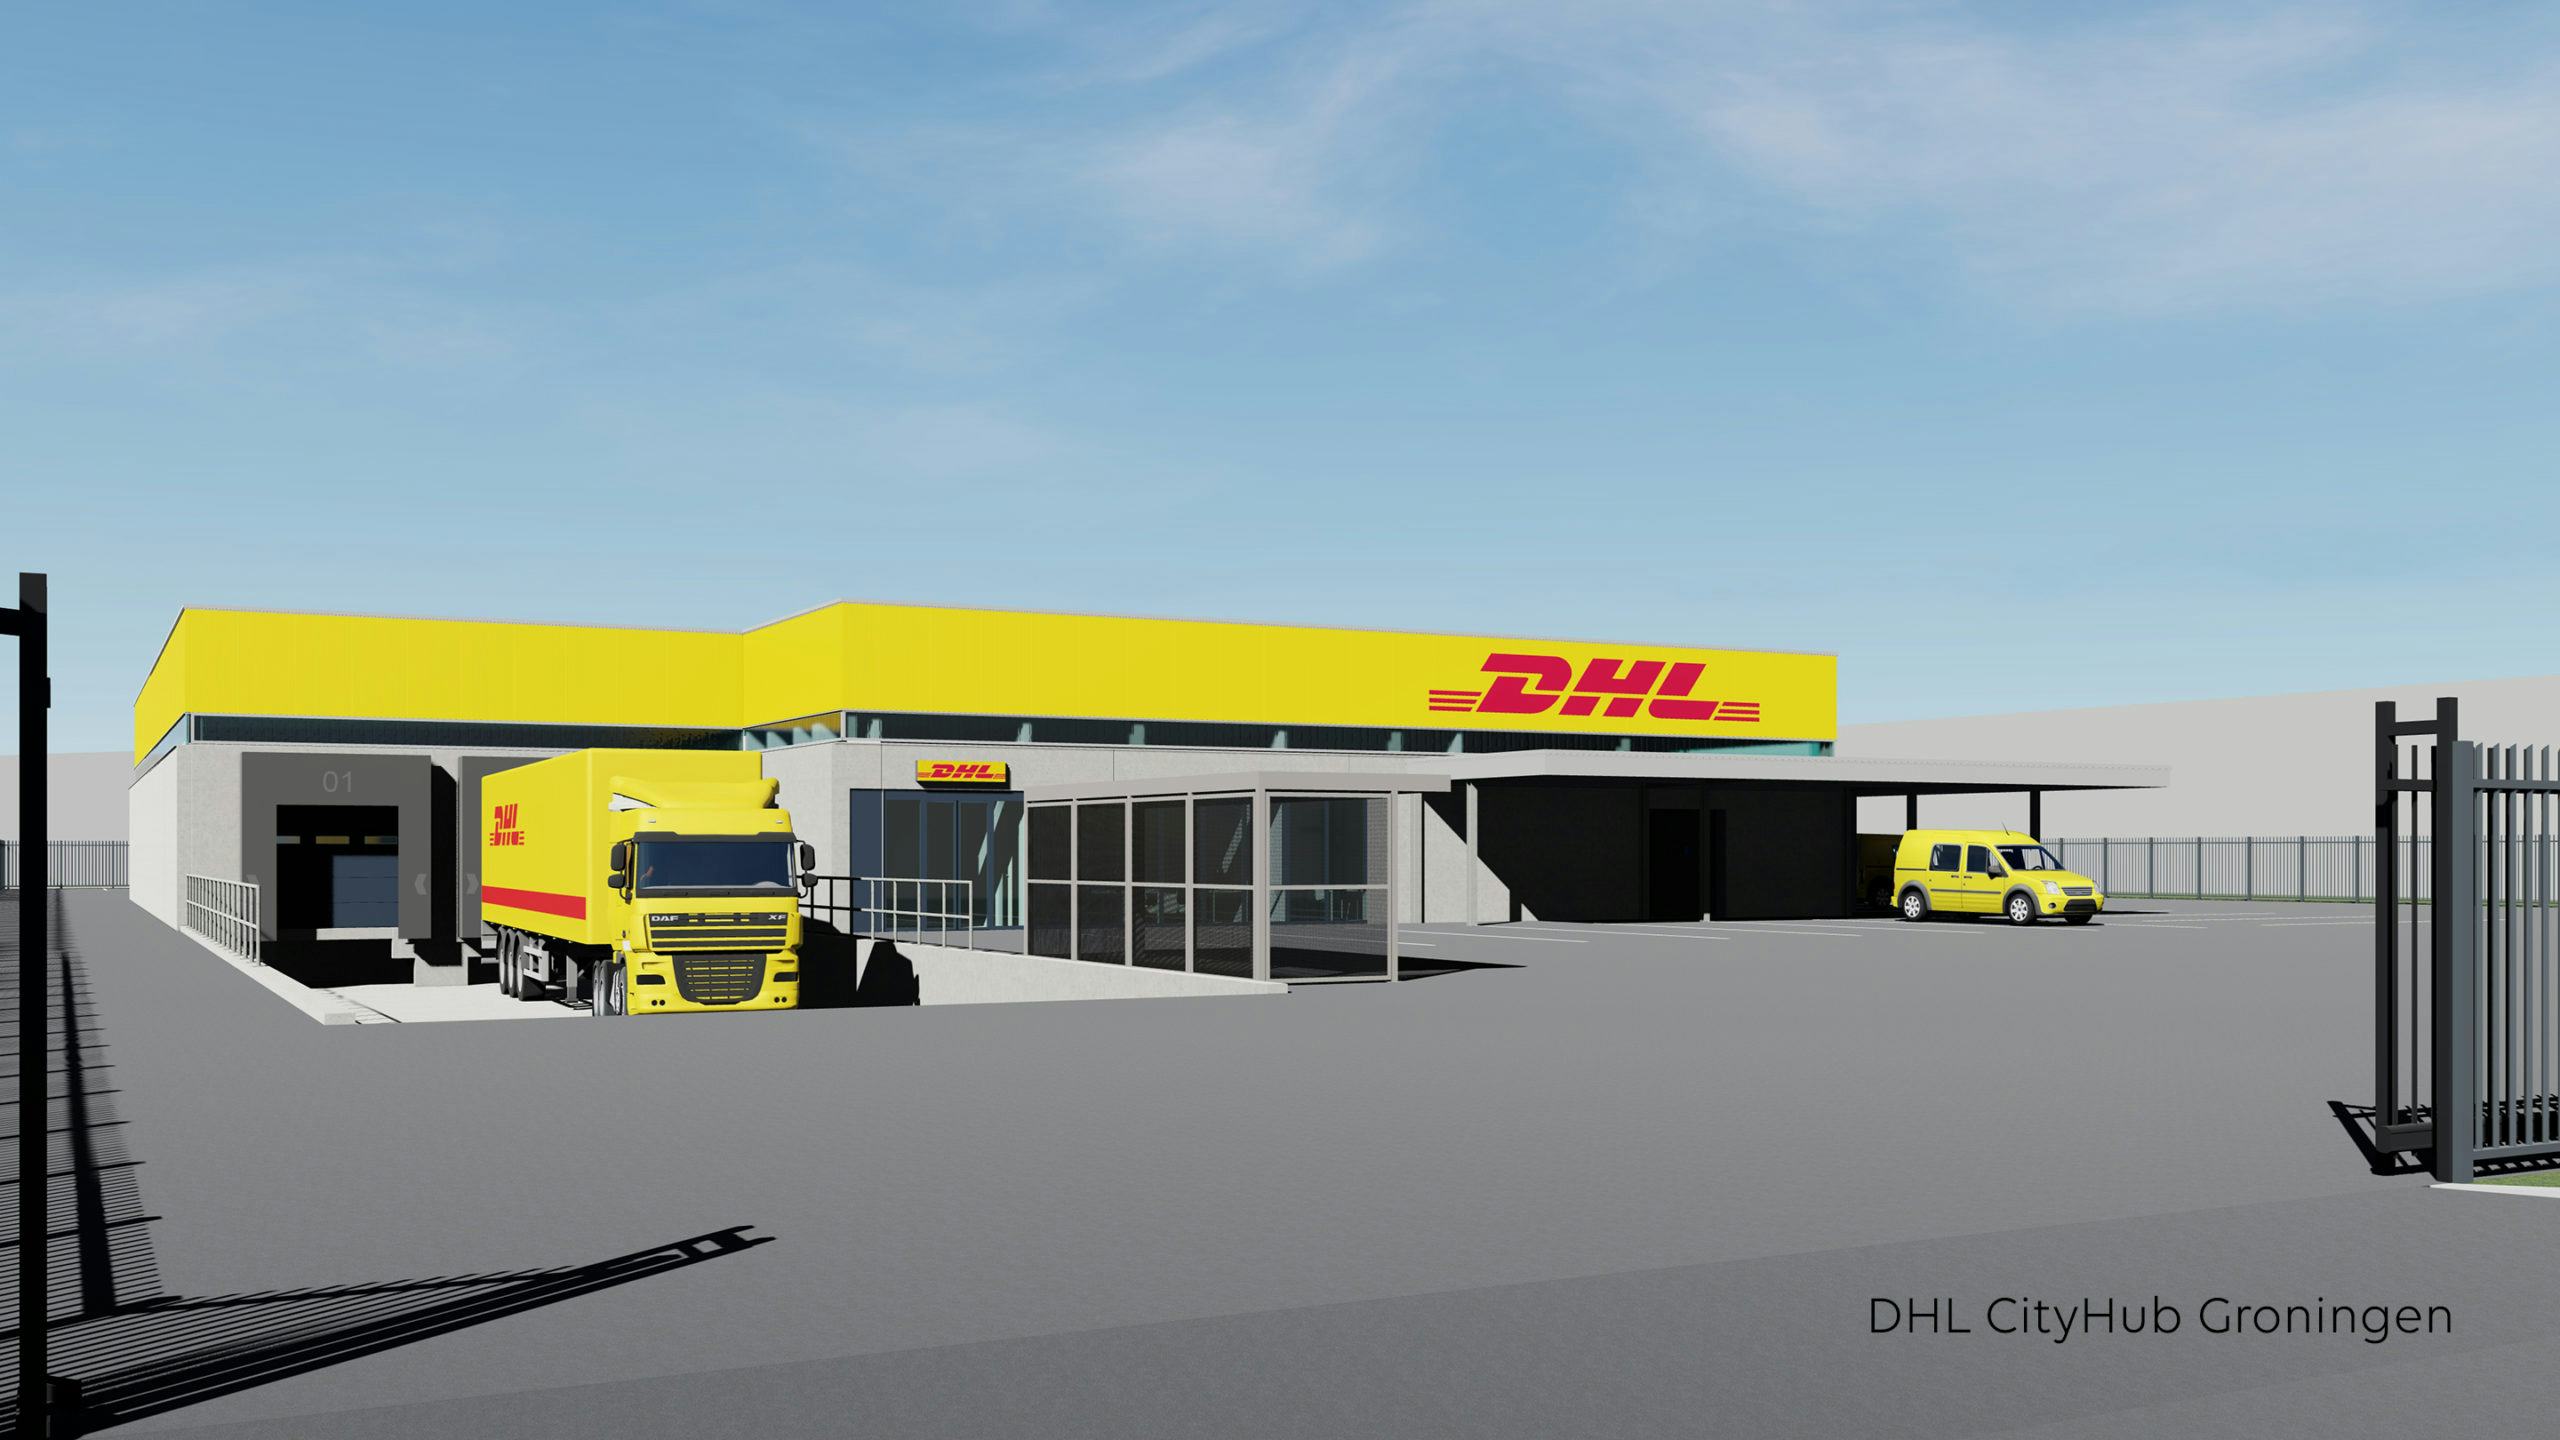 DHL bouwt cityHubs op meerdere locaties in Nederland